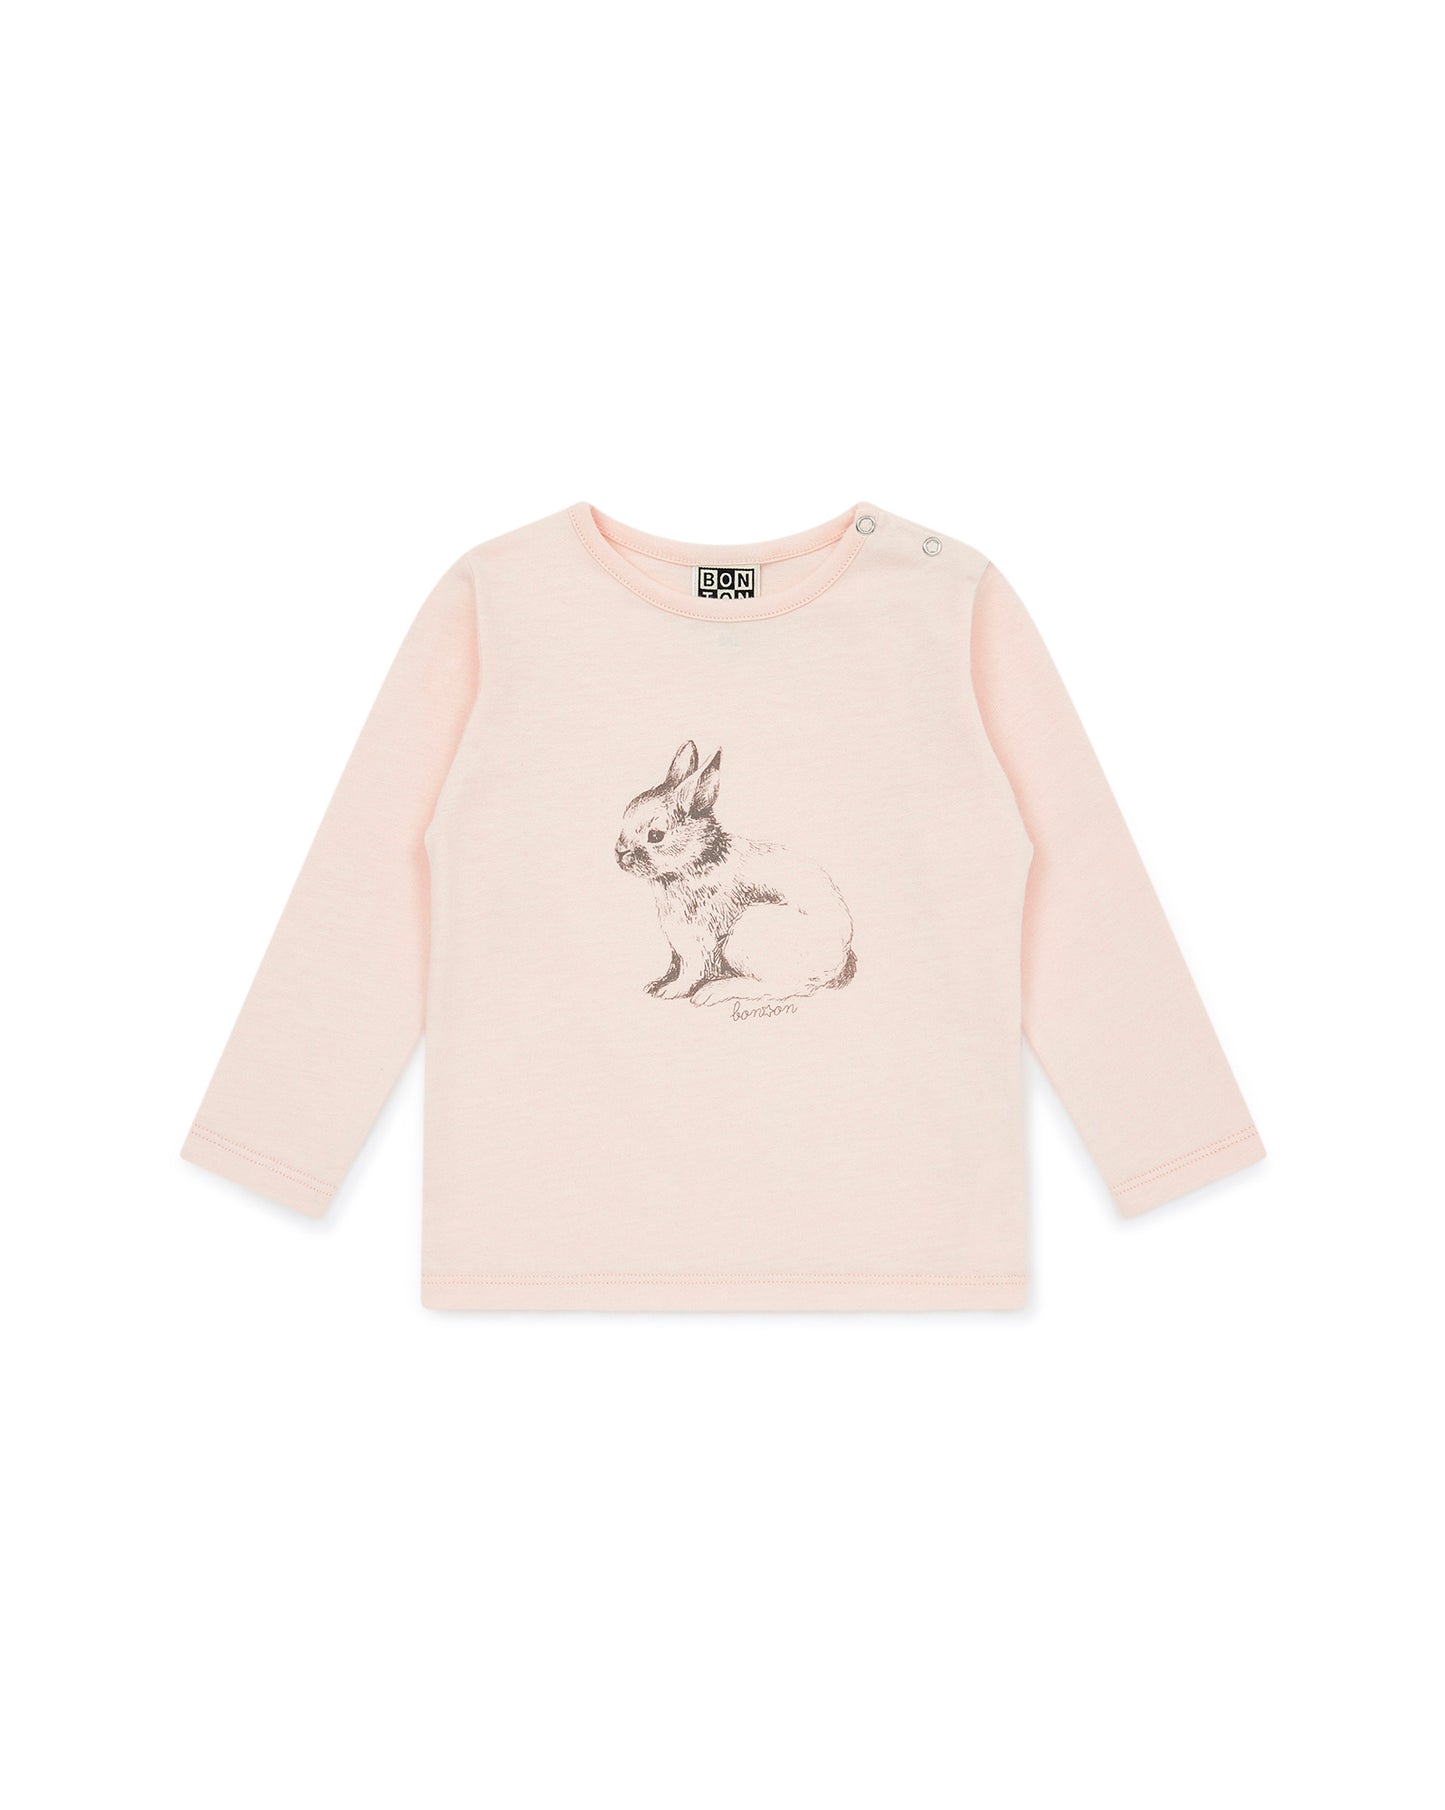 Tee-shirt - Bébé Fille Lapin coton biologique